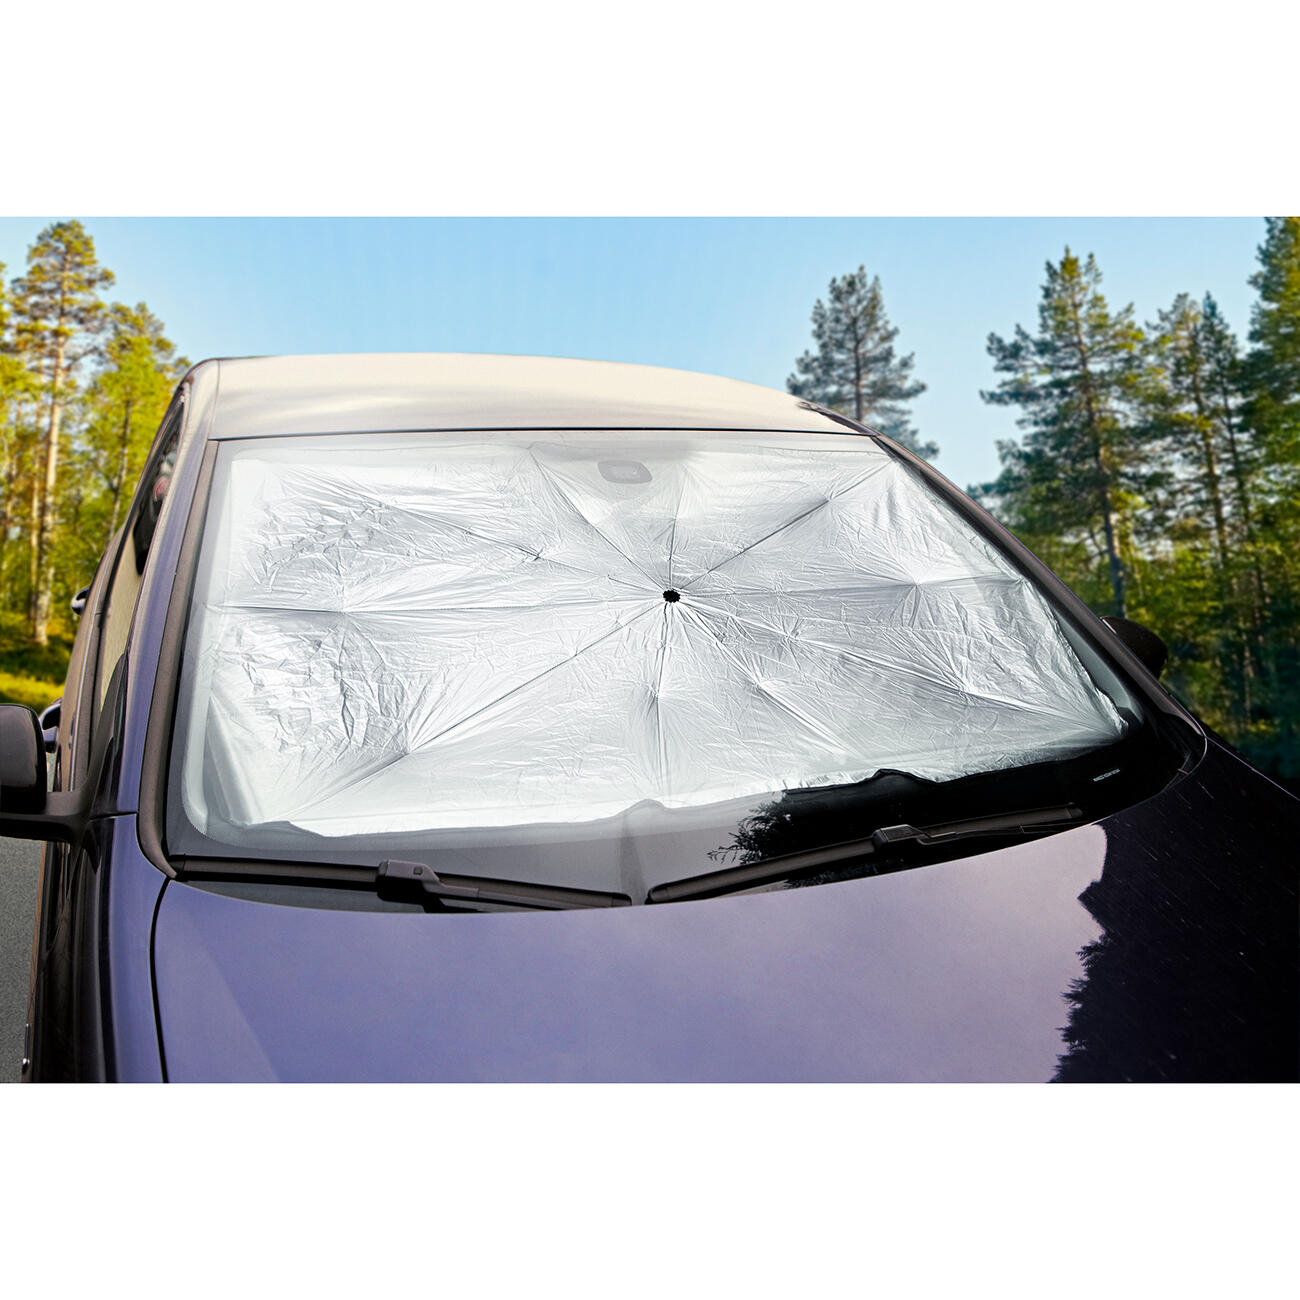 Auto Sonnenschutz Windschutzscheibe - Kostenloser Versand Für Neue